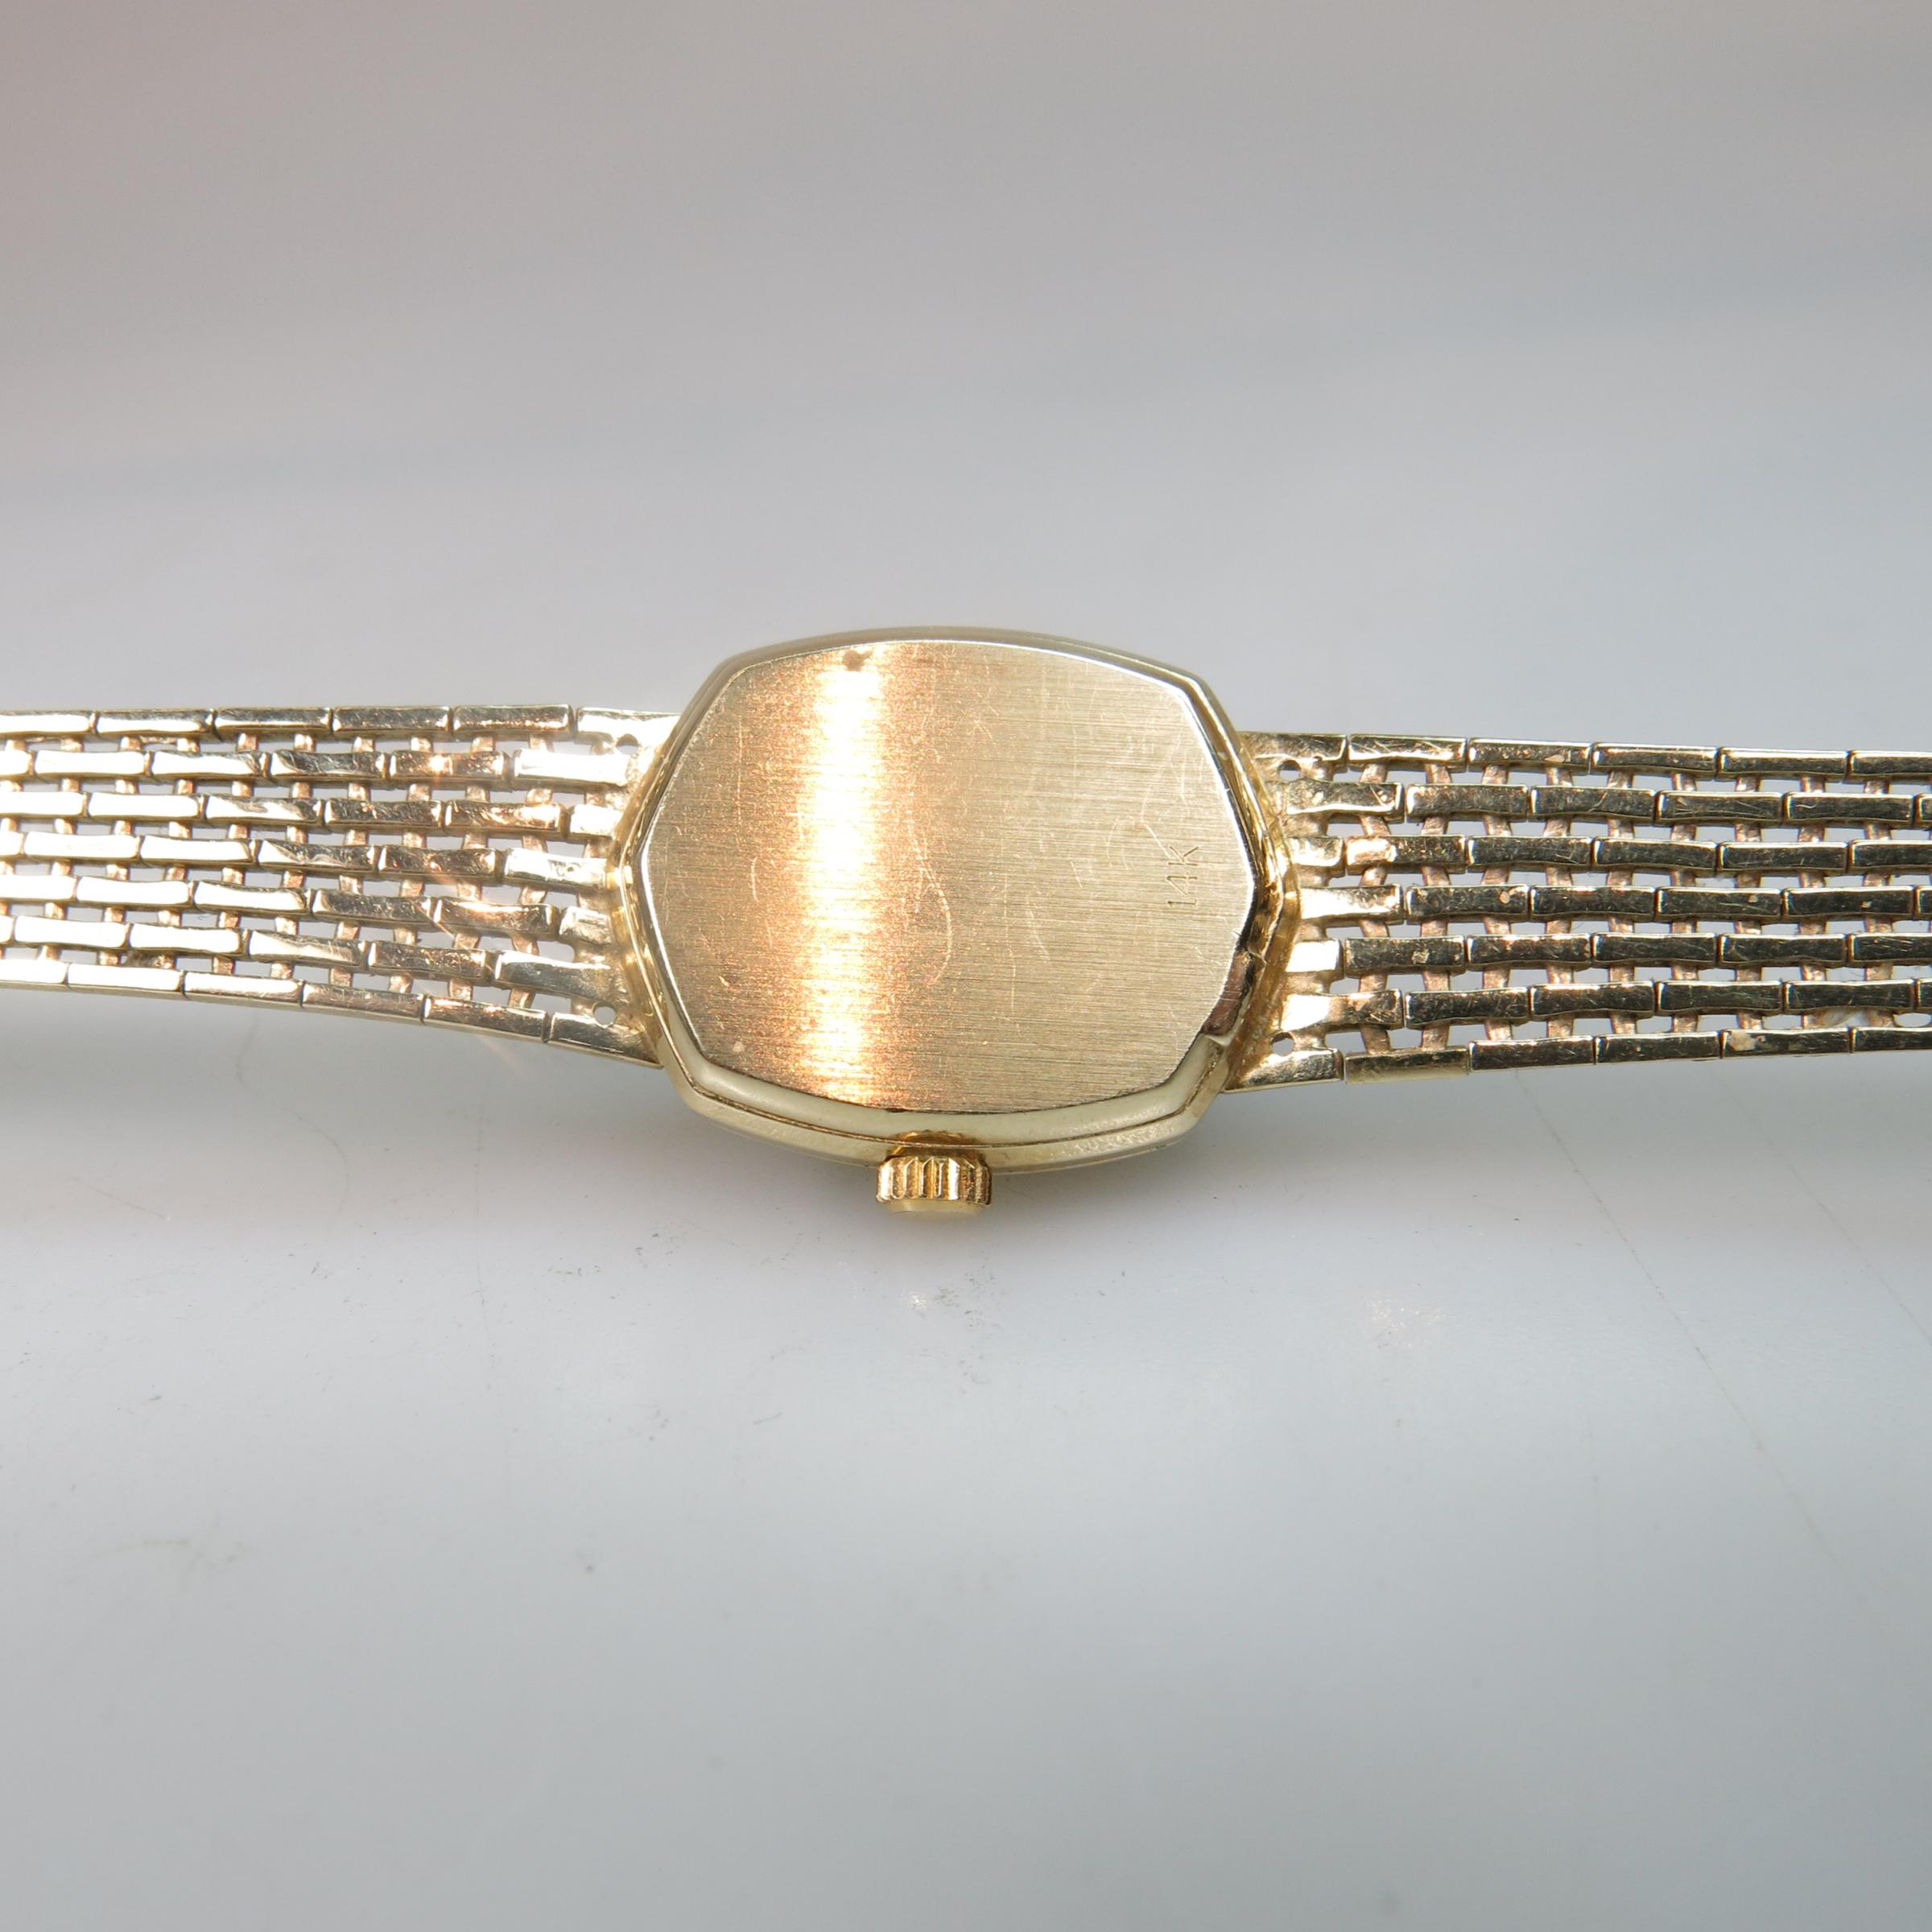 Lady's Birks Wristwatch